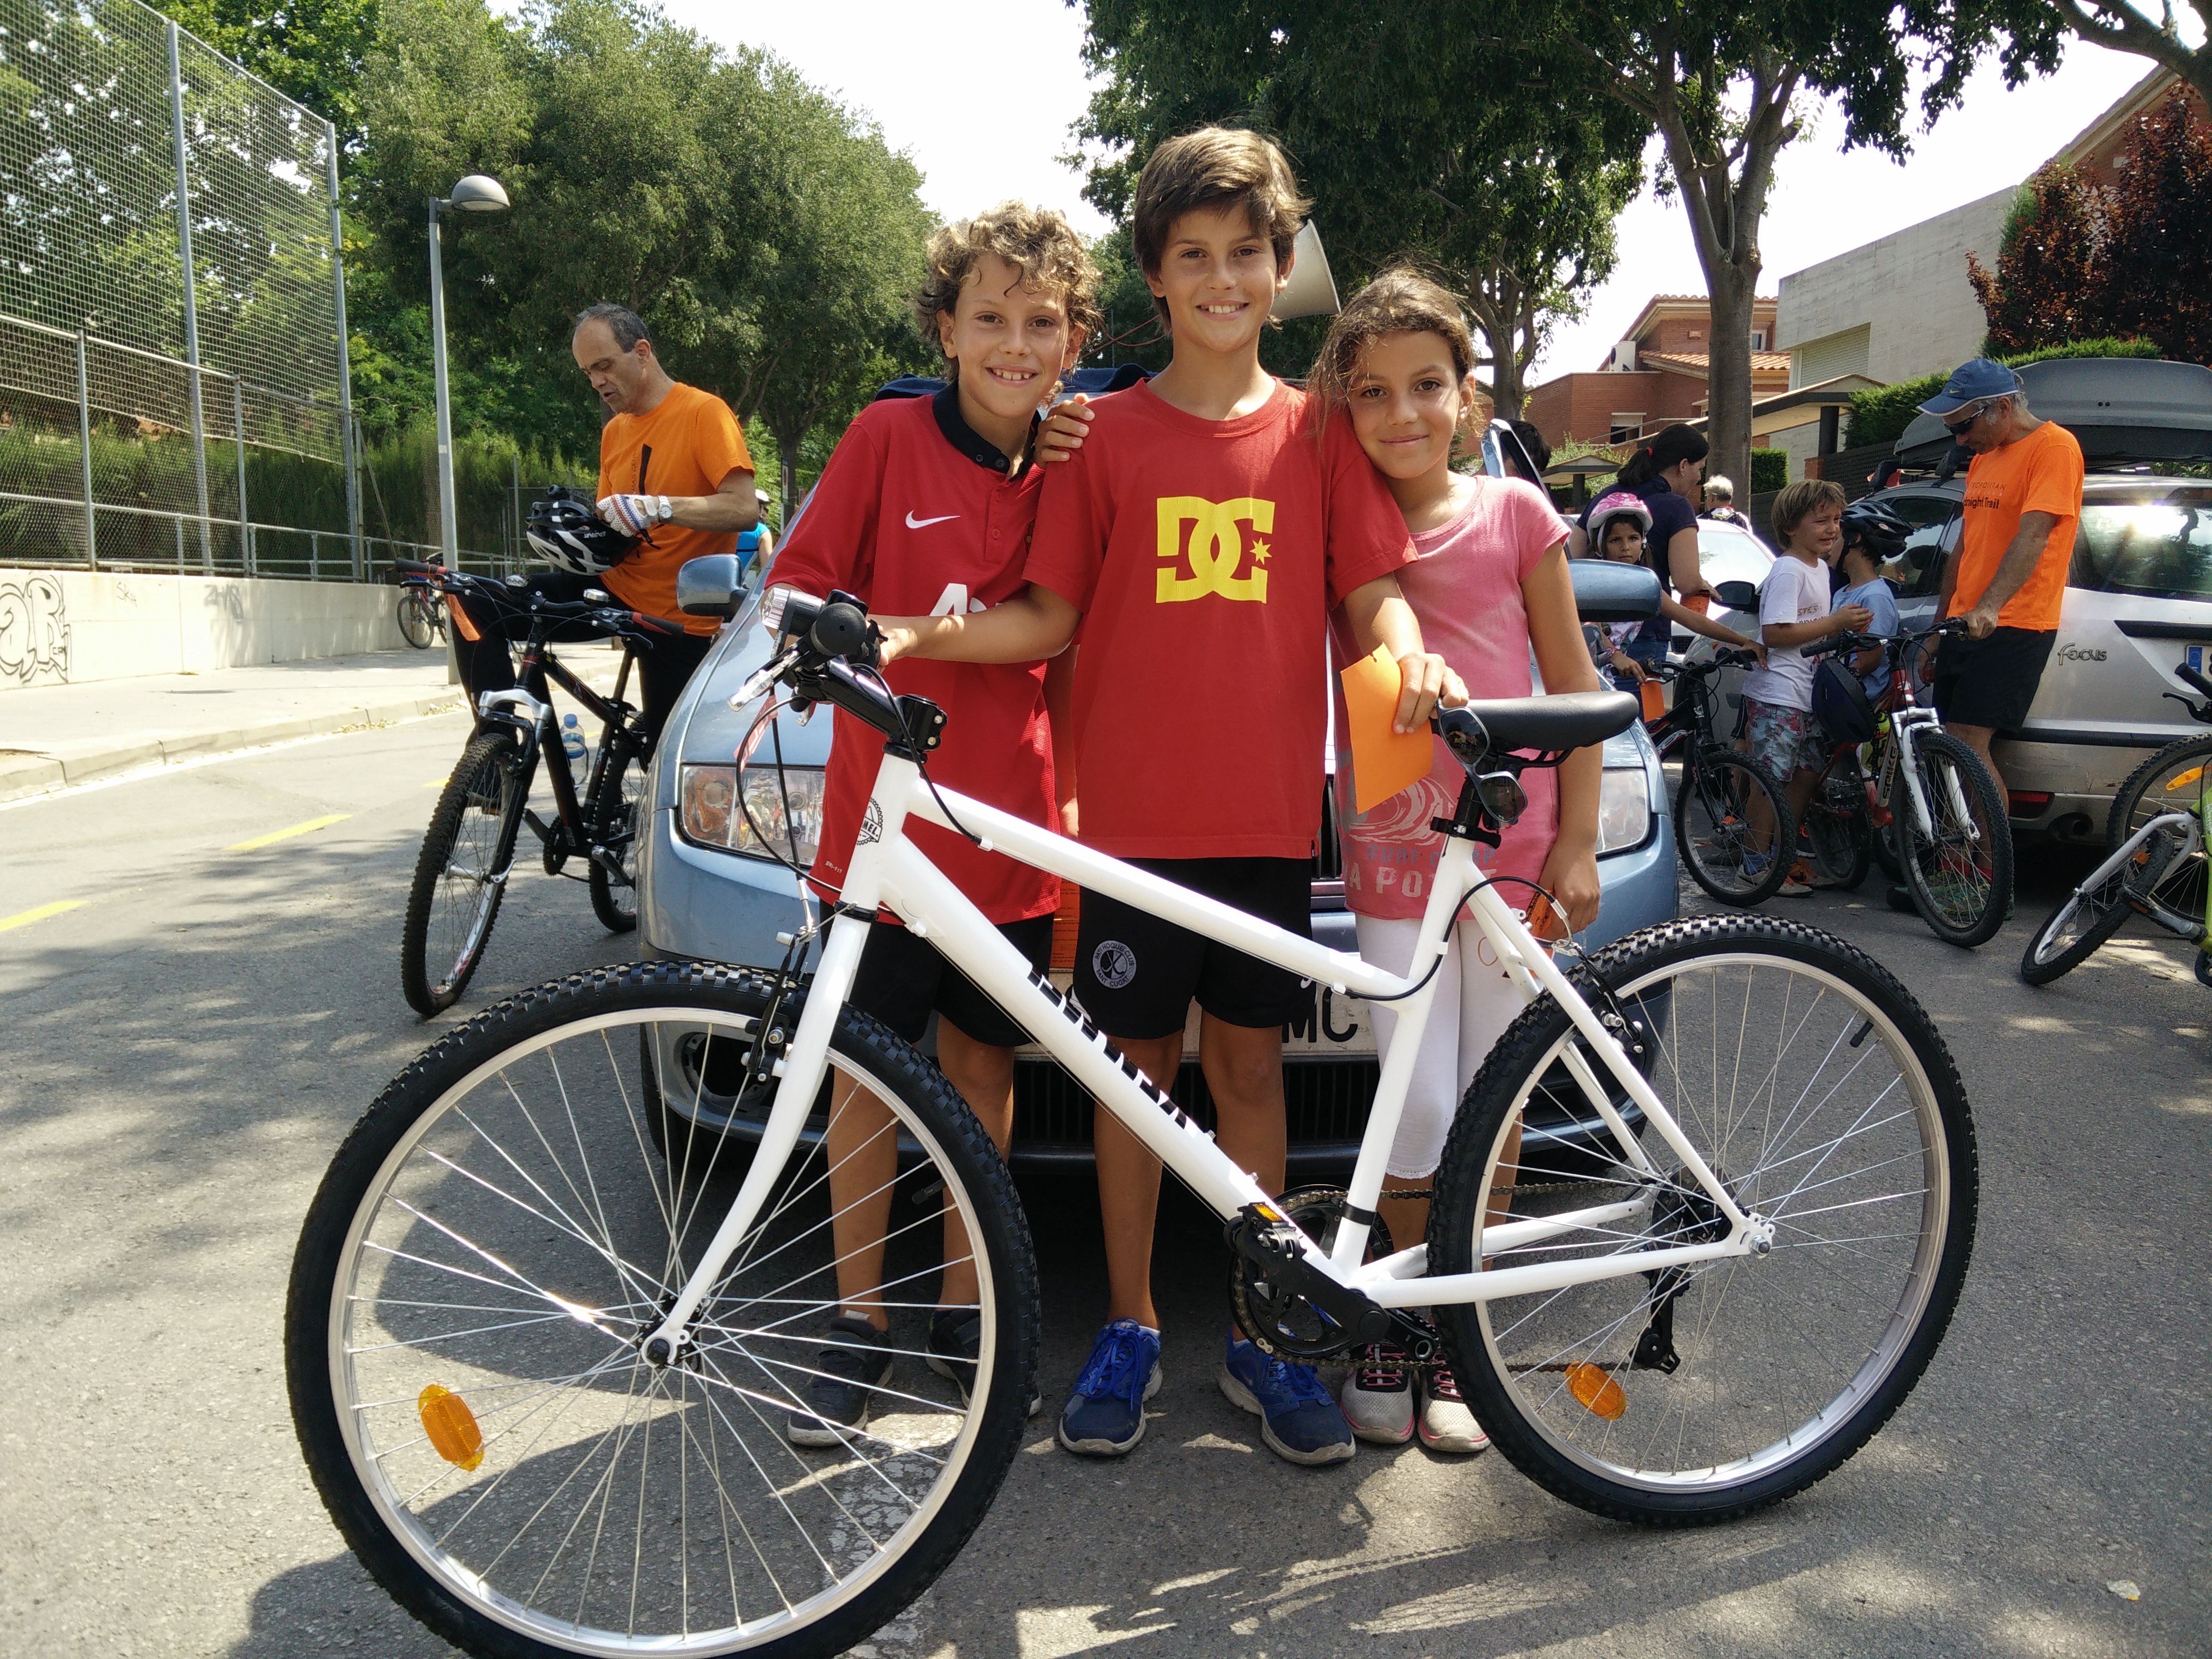 Pablo Hamdan, al centre, amb la bicicleta que ha guanyat. FOTO: Pere Fernández